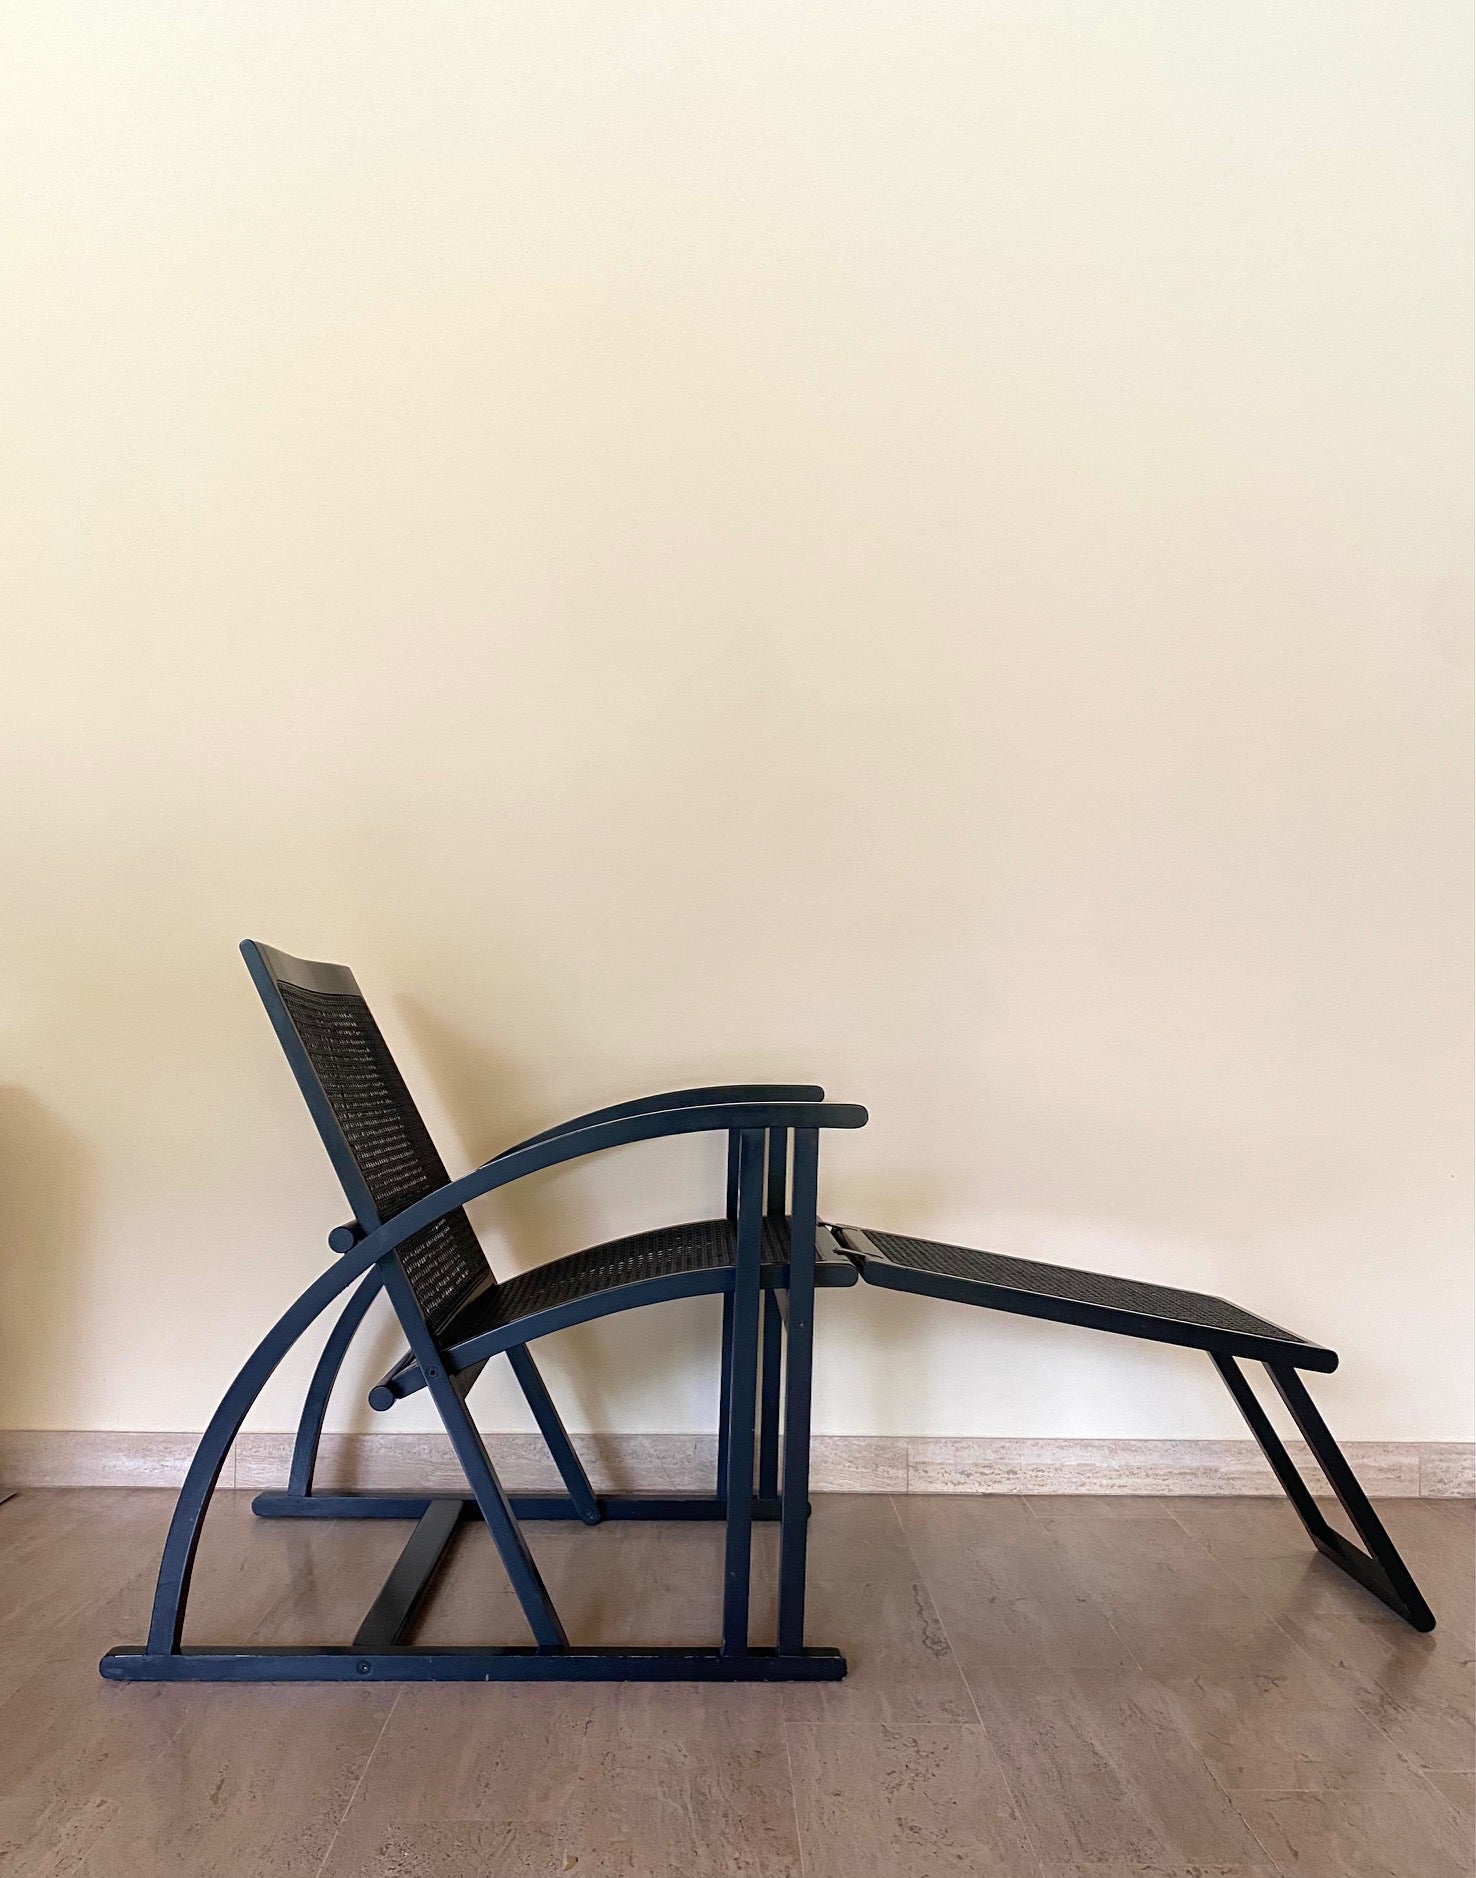 Cette chaise longue en bois conçue dans les années 1980 et produite par Pamco Triconfort est un fidèle rappel d'une époque plus simple, tant par son influence moderniste que par ses touches de mobilier traditionnel.
Il se compose, d'une part, d'une